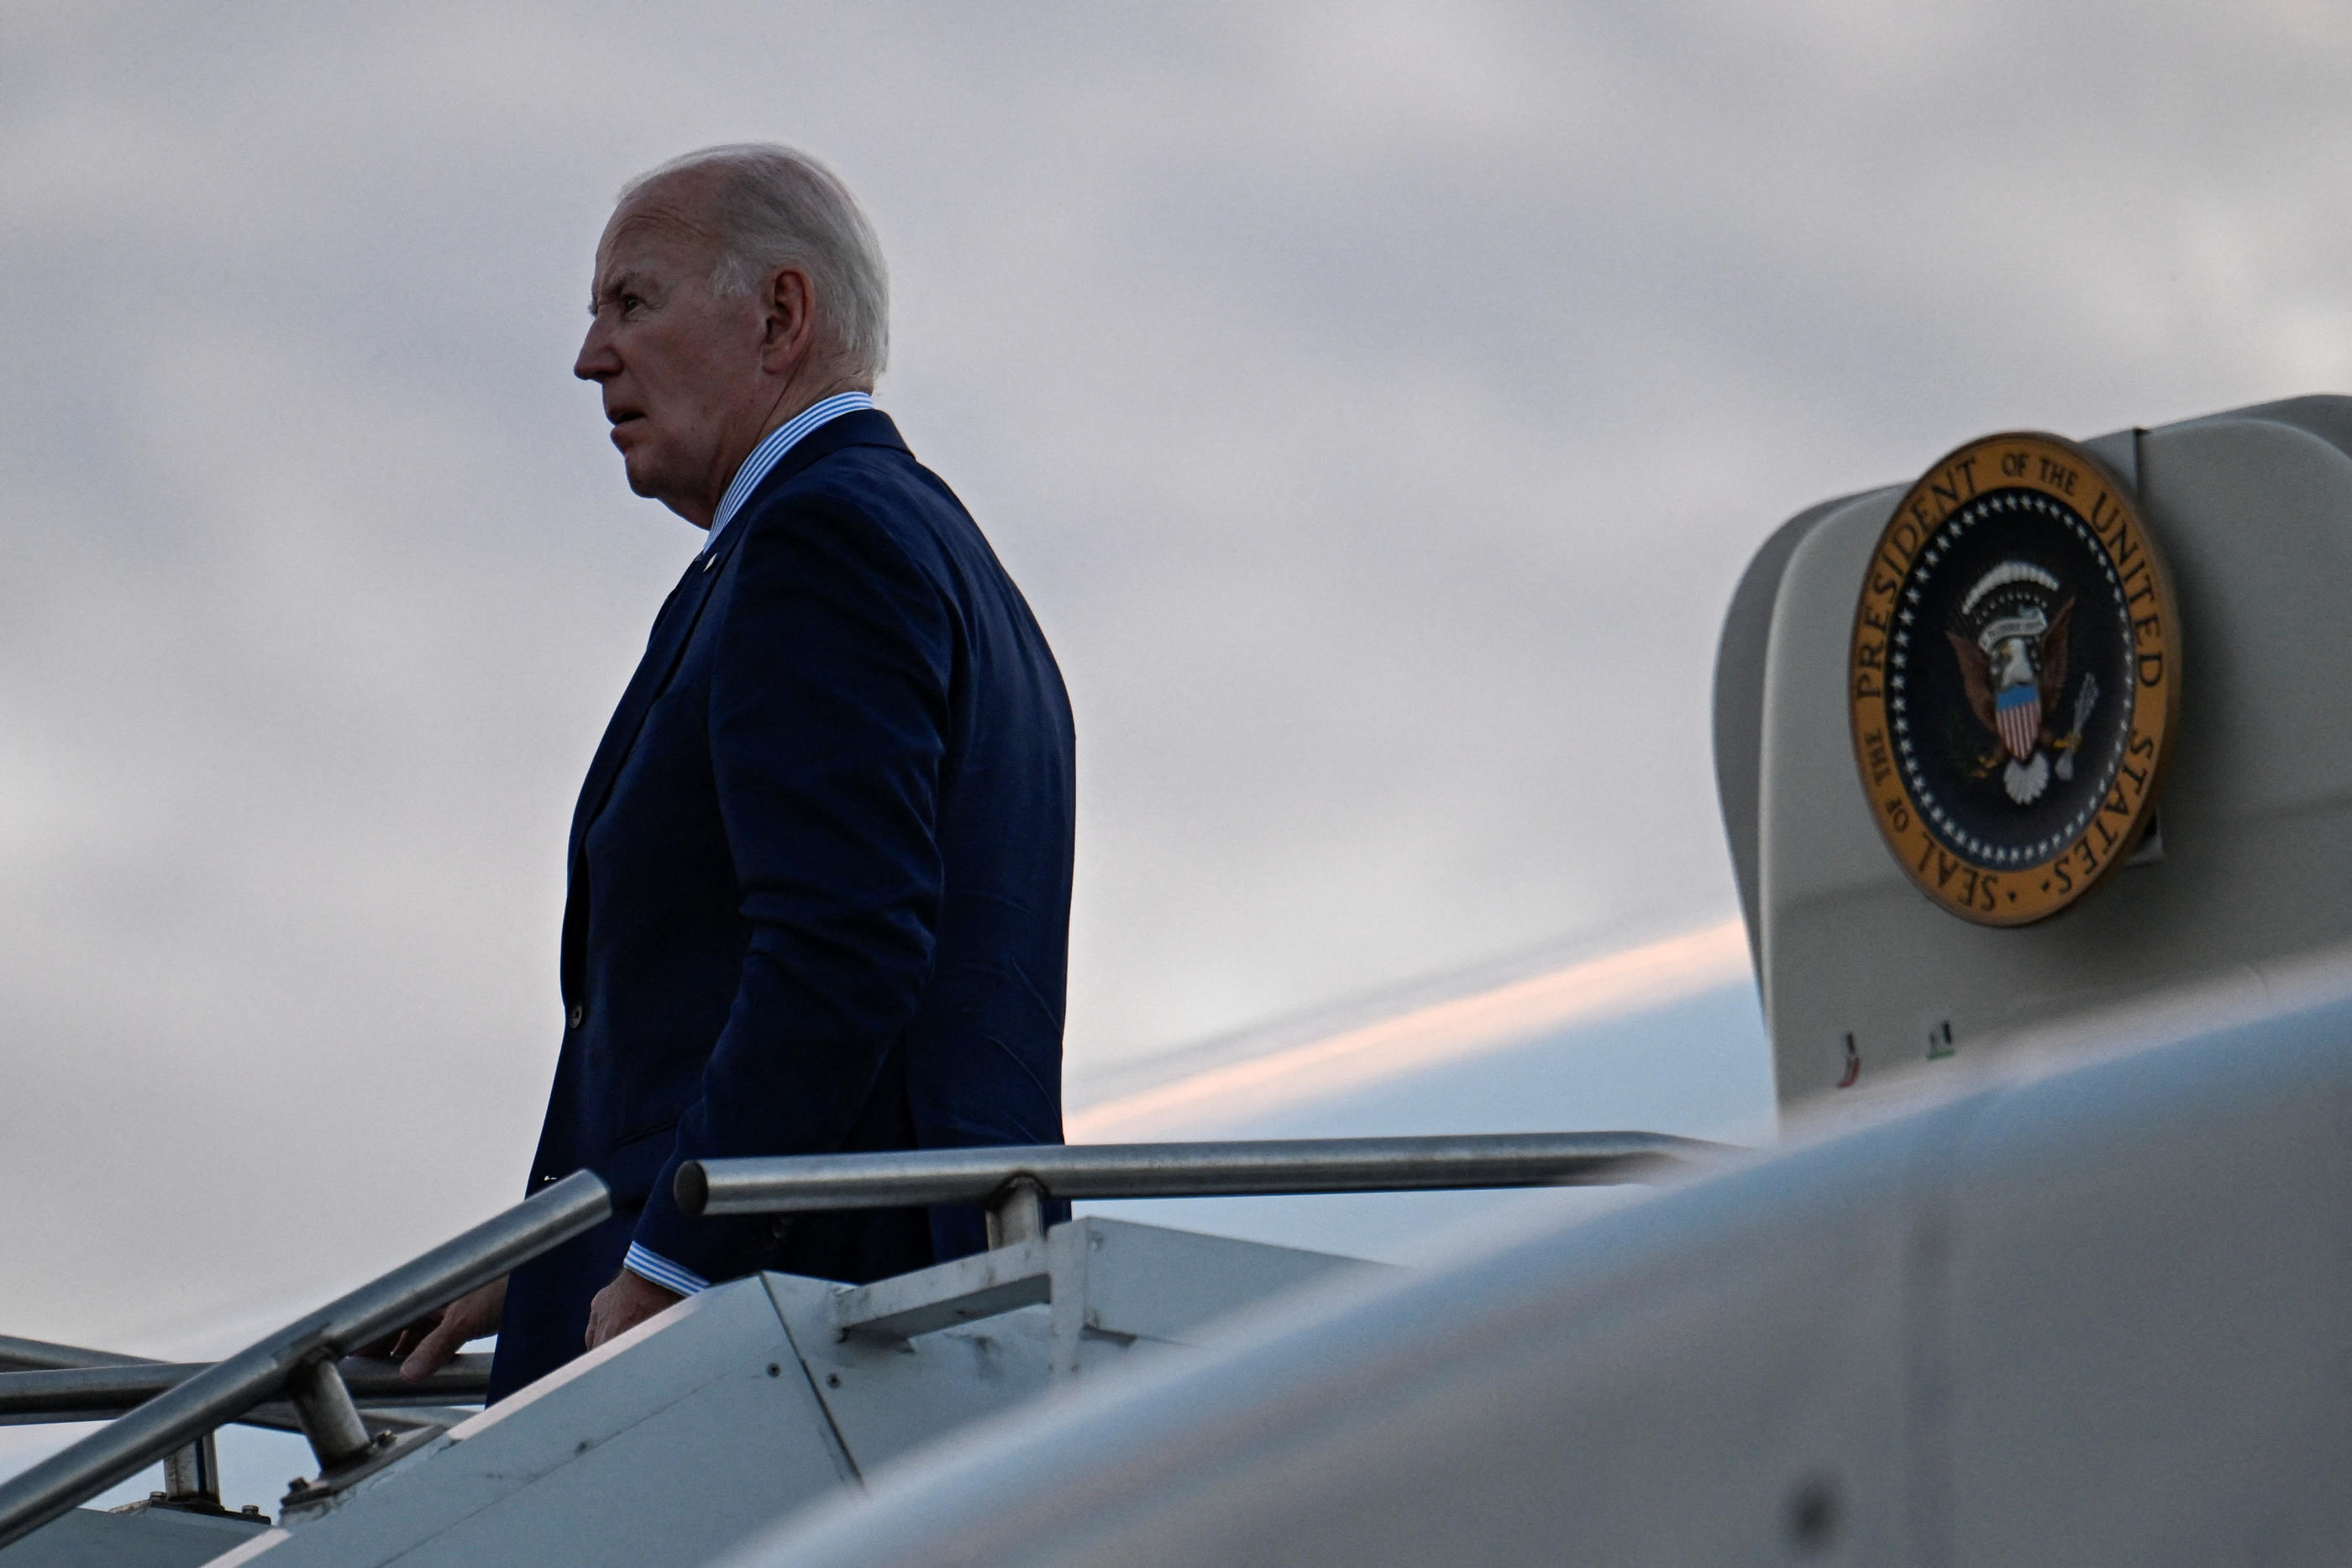 Ce mercredi, Joe Biden atterrira en France et le président américain, en campagne pour sa réélection à la Maison Blanche face à Donald Trump, ne redécollera pour Washington que dimanche. REUTERS/Craig Hudson